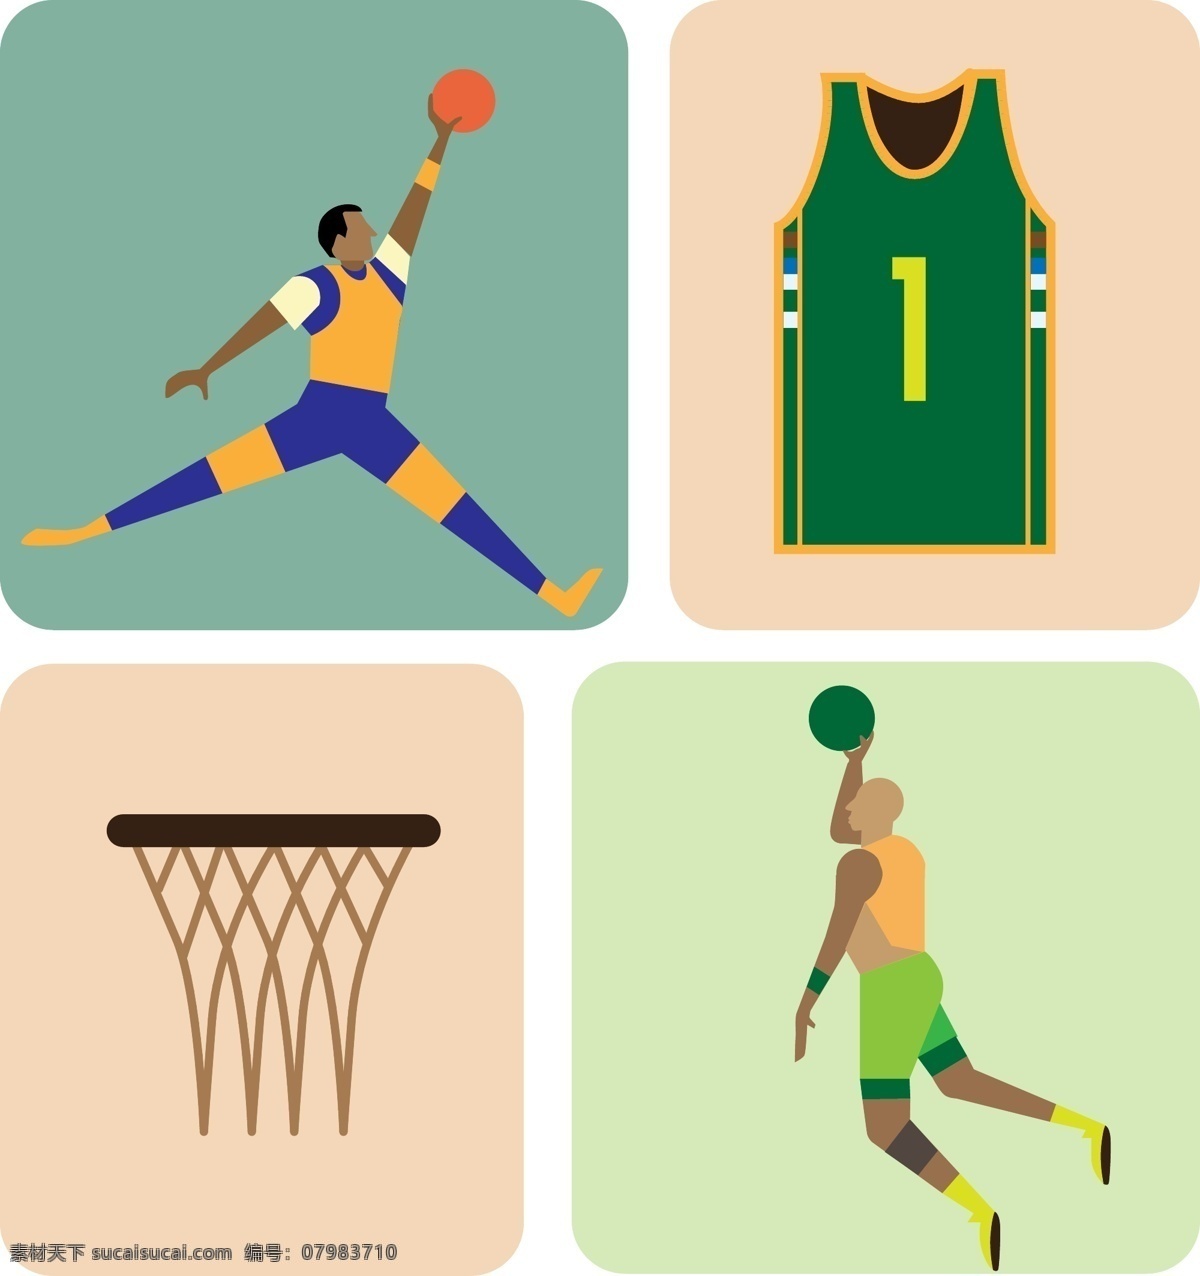 蓝绿 色系 nba 运动 人物 装饰物 篮球 投篮 背心 篮圈 蓝绿色系